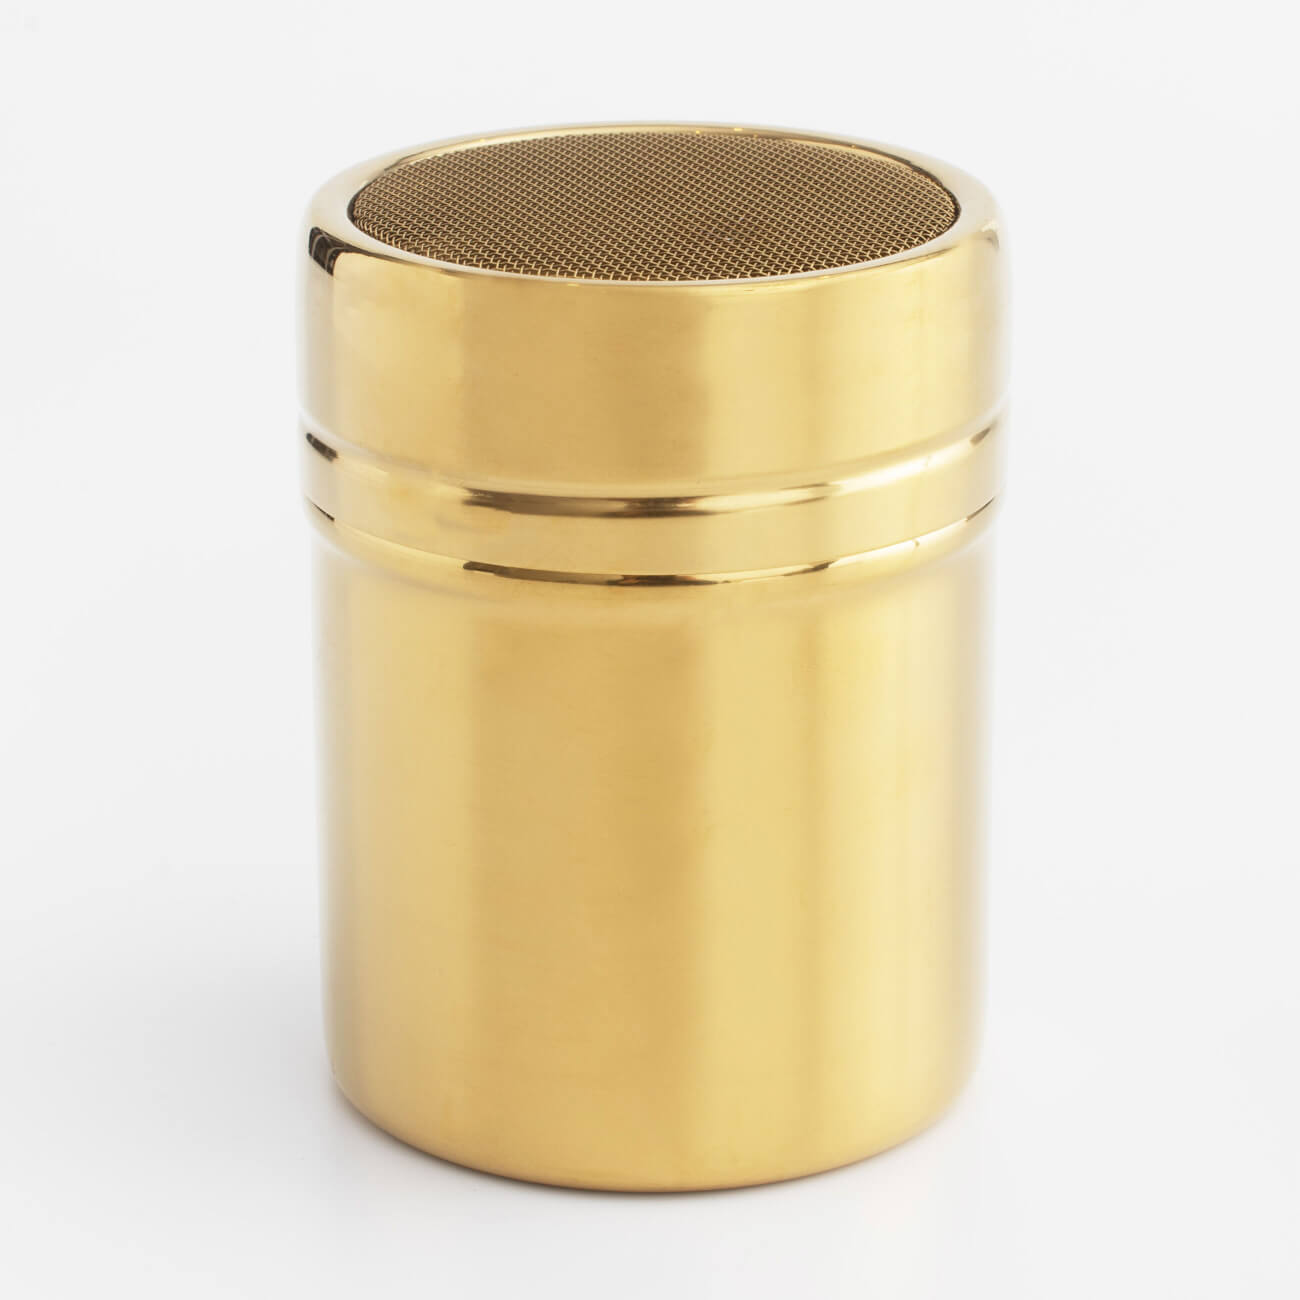 Сито-кружка, 9х7 см, с крышкой, сталь/пластик, золотистое, Classic gold сито